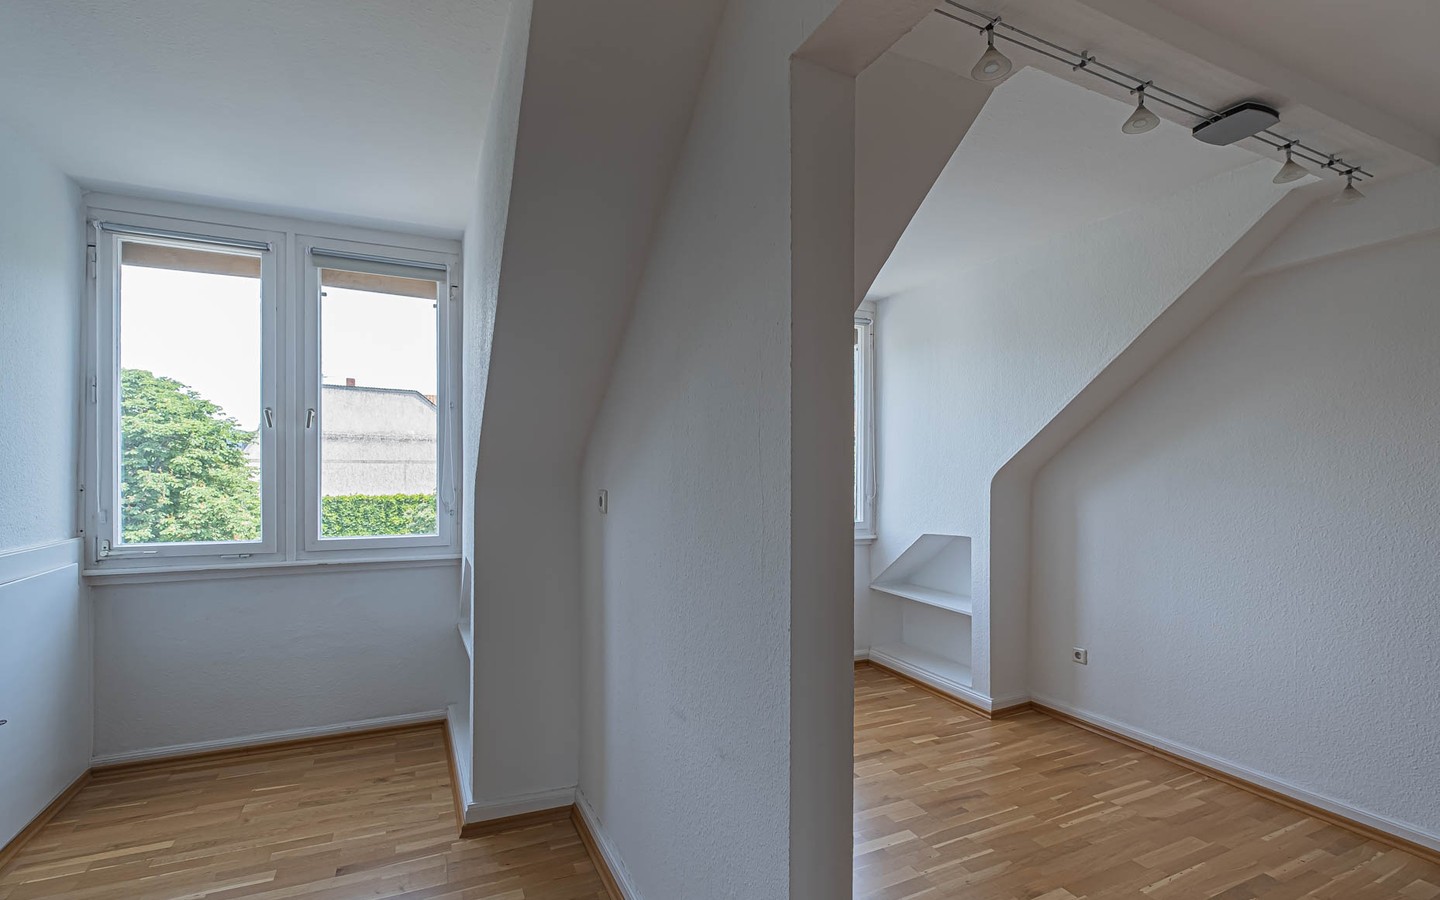 Zimmer 2 +3 - Wohnen über den Dächern von Heidelberg wie einst der Adel. WG und Familien herzlich willkommen!